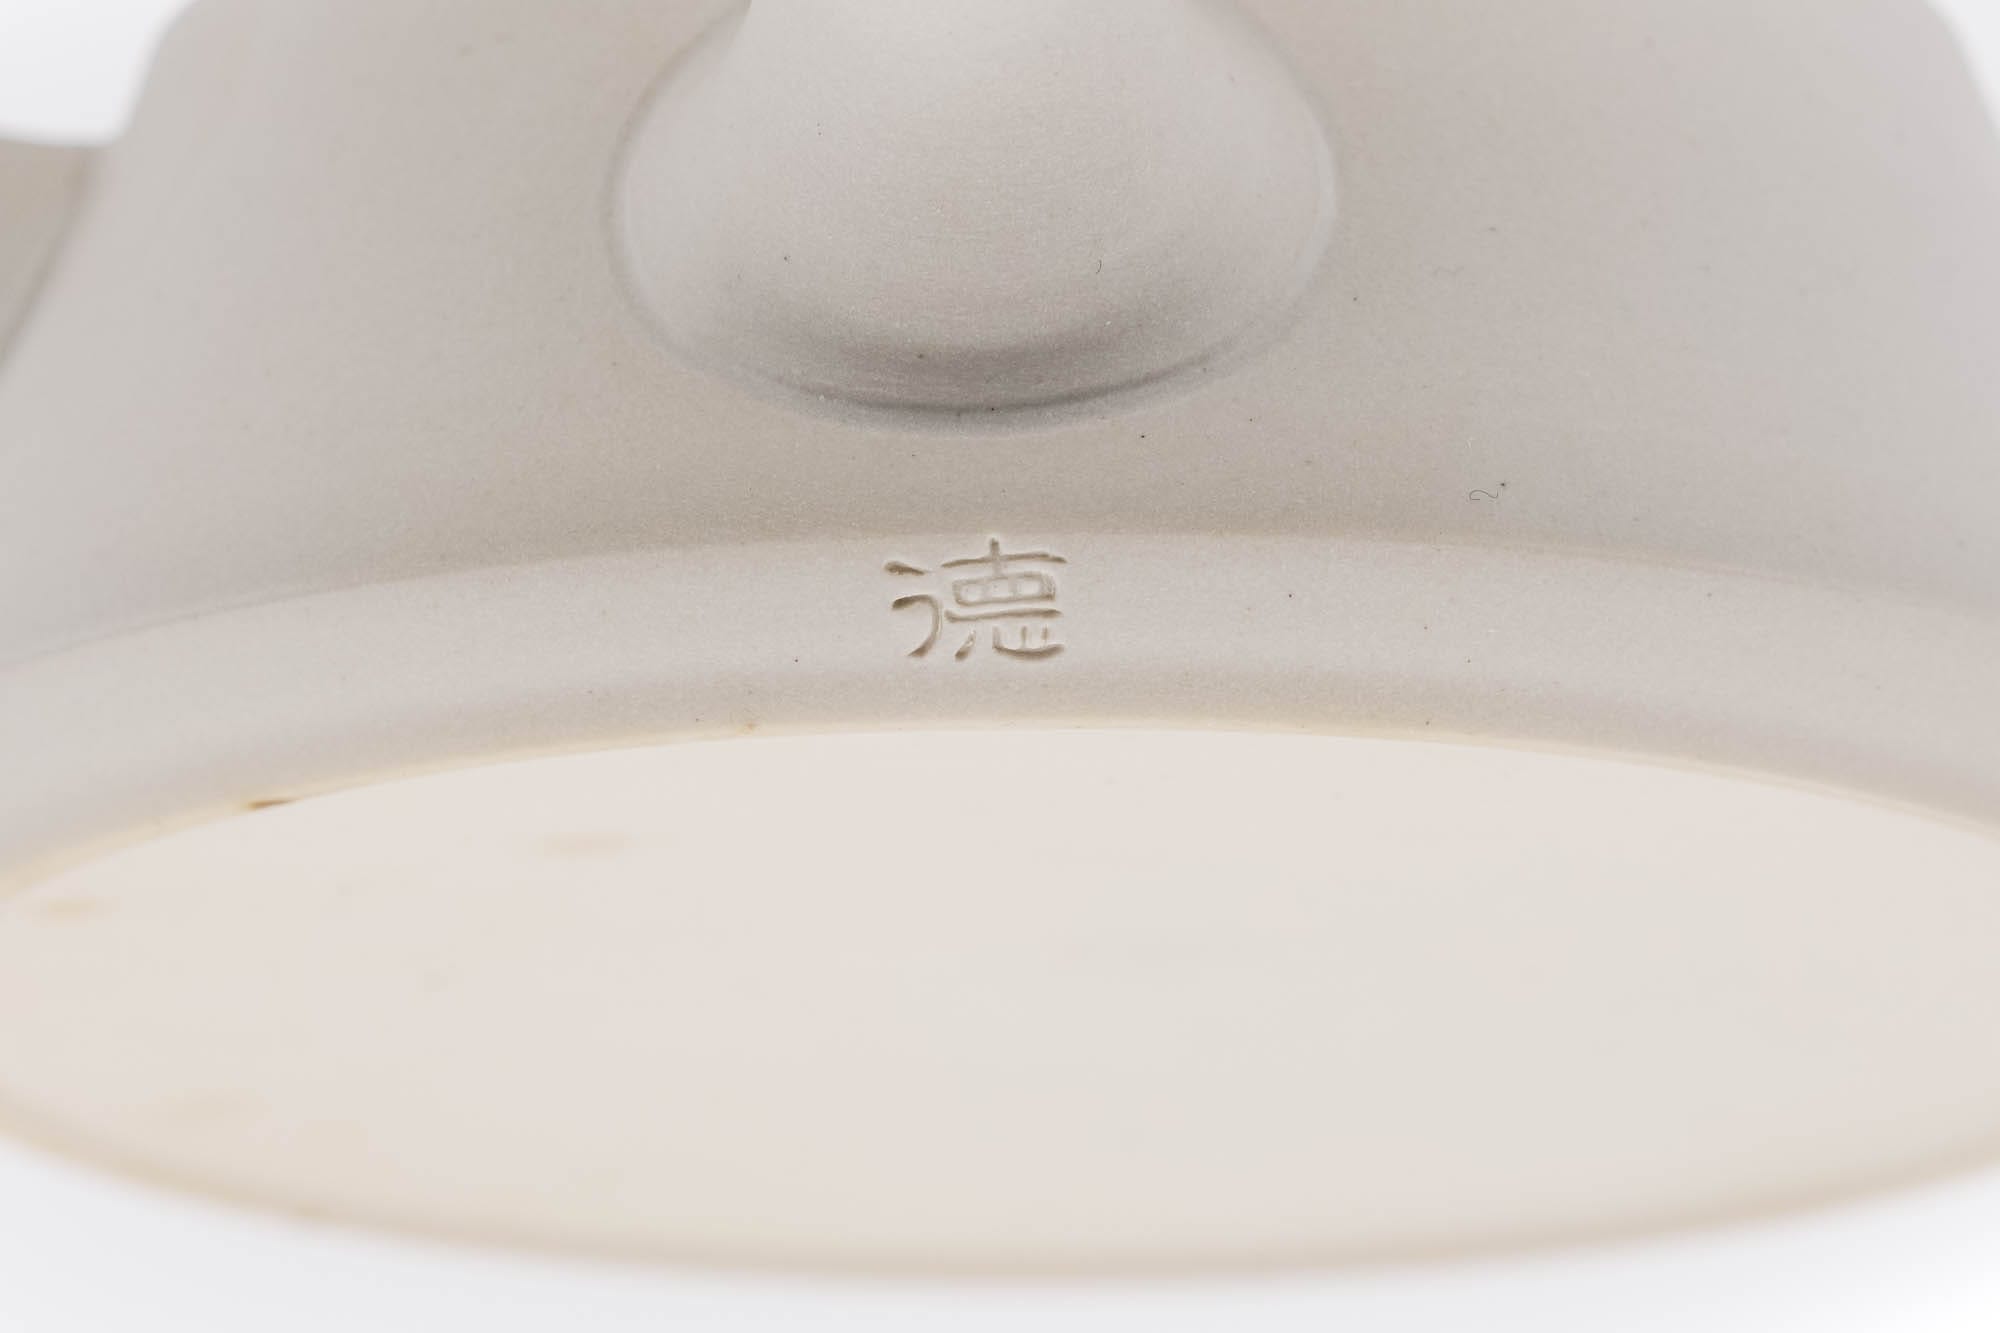 Japanese Kyusu - 藤田徳太 Fujita Tokuta - Trapezoidal White Tokoname-yaki Teapot - 200ml